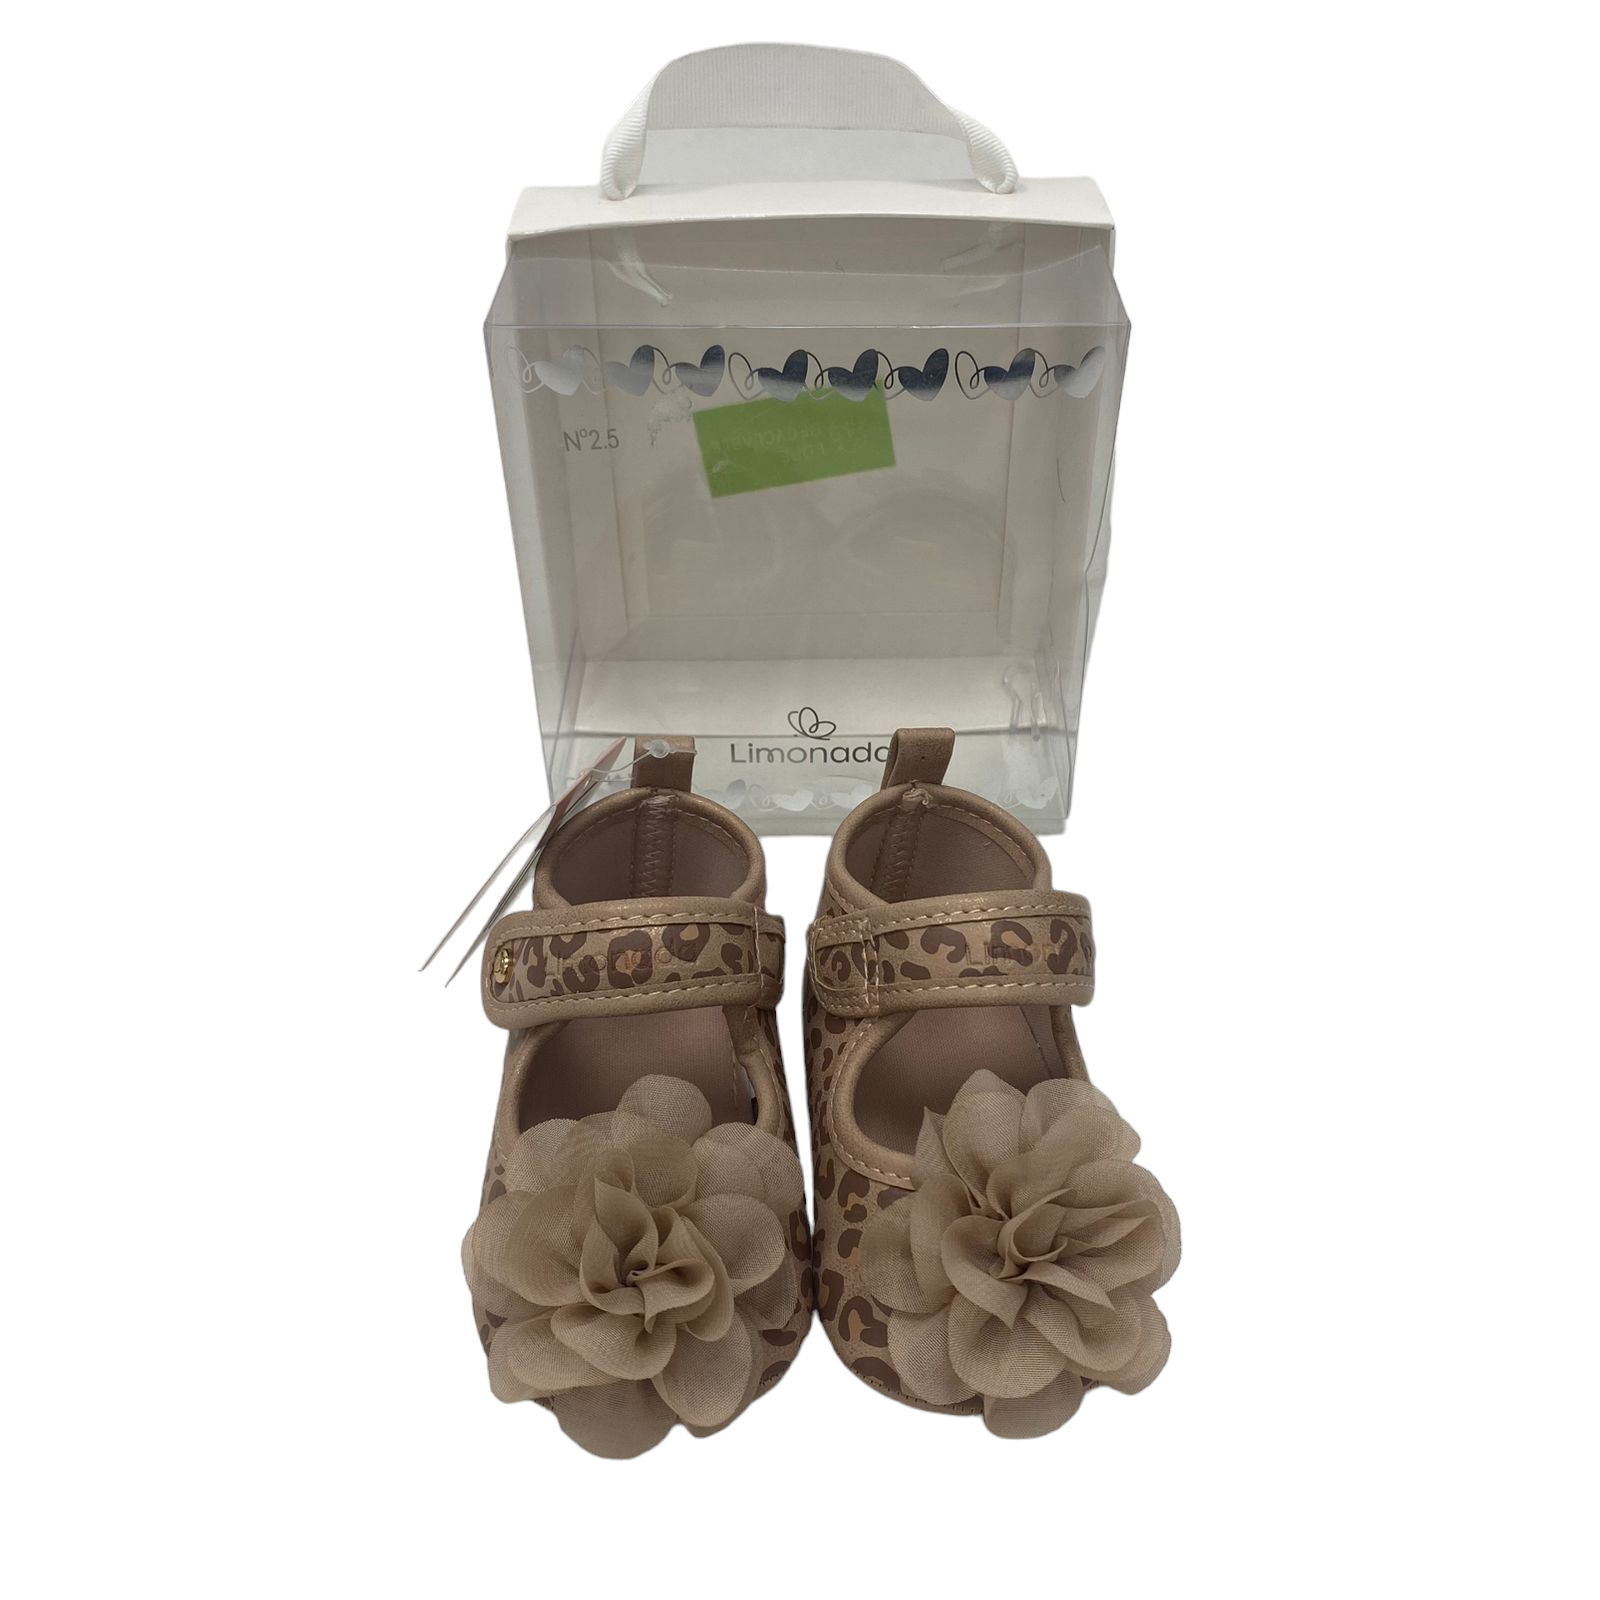 Zapatillas beige de animal print y flor nuevas con su etiqueta y caja